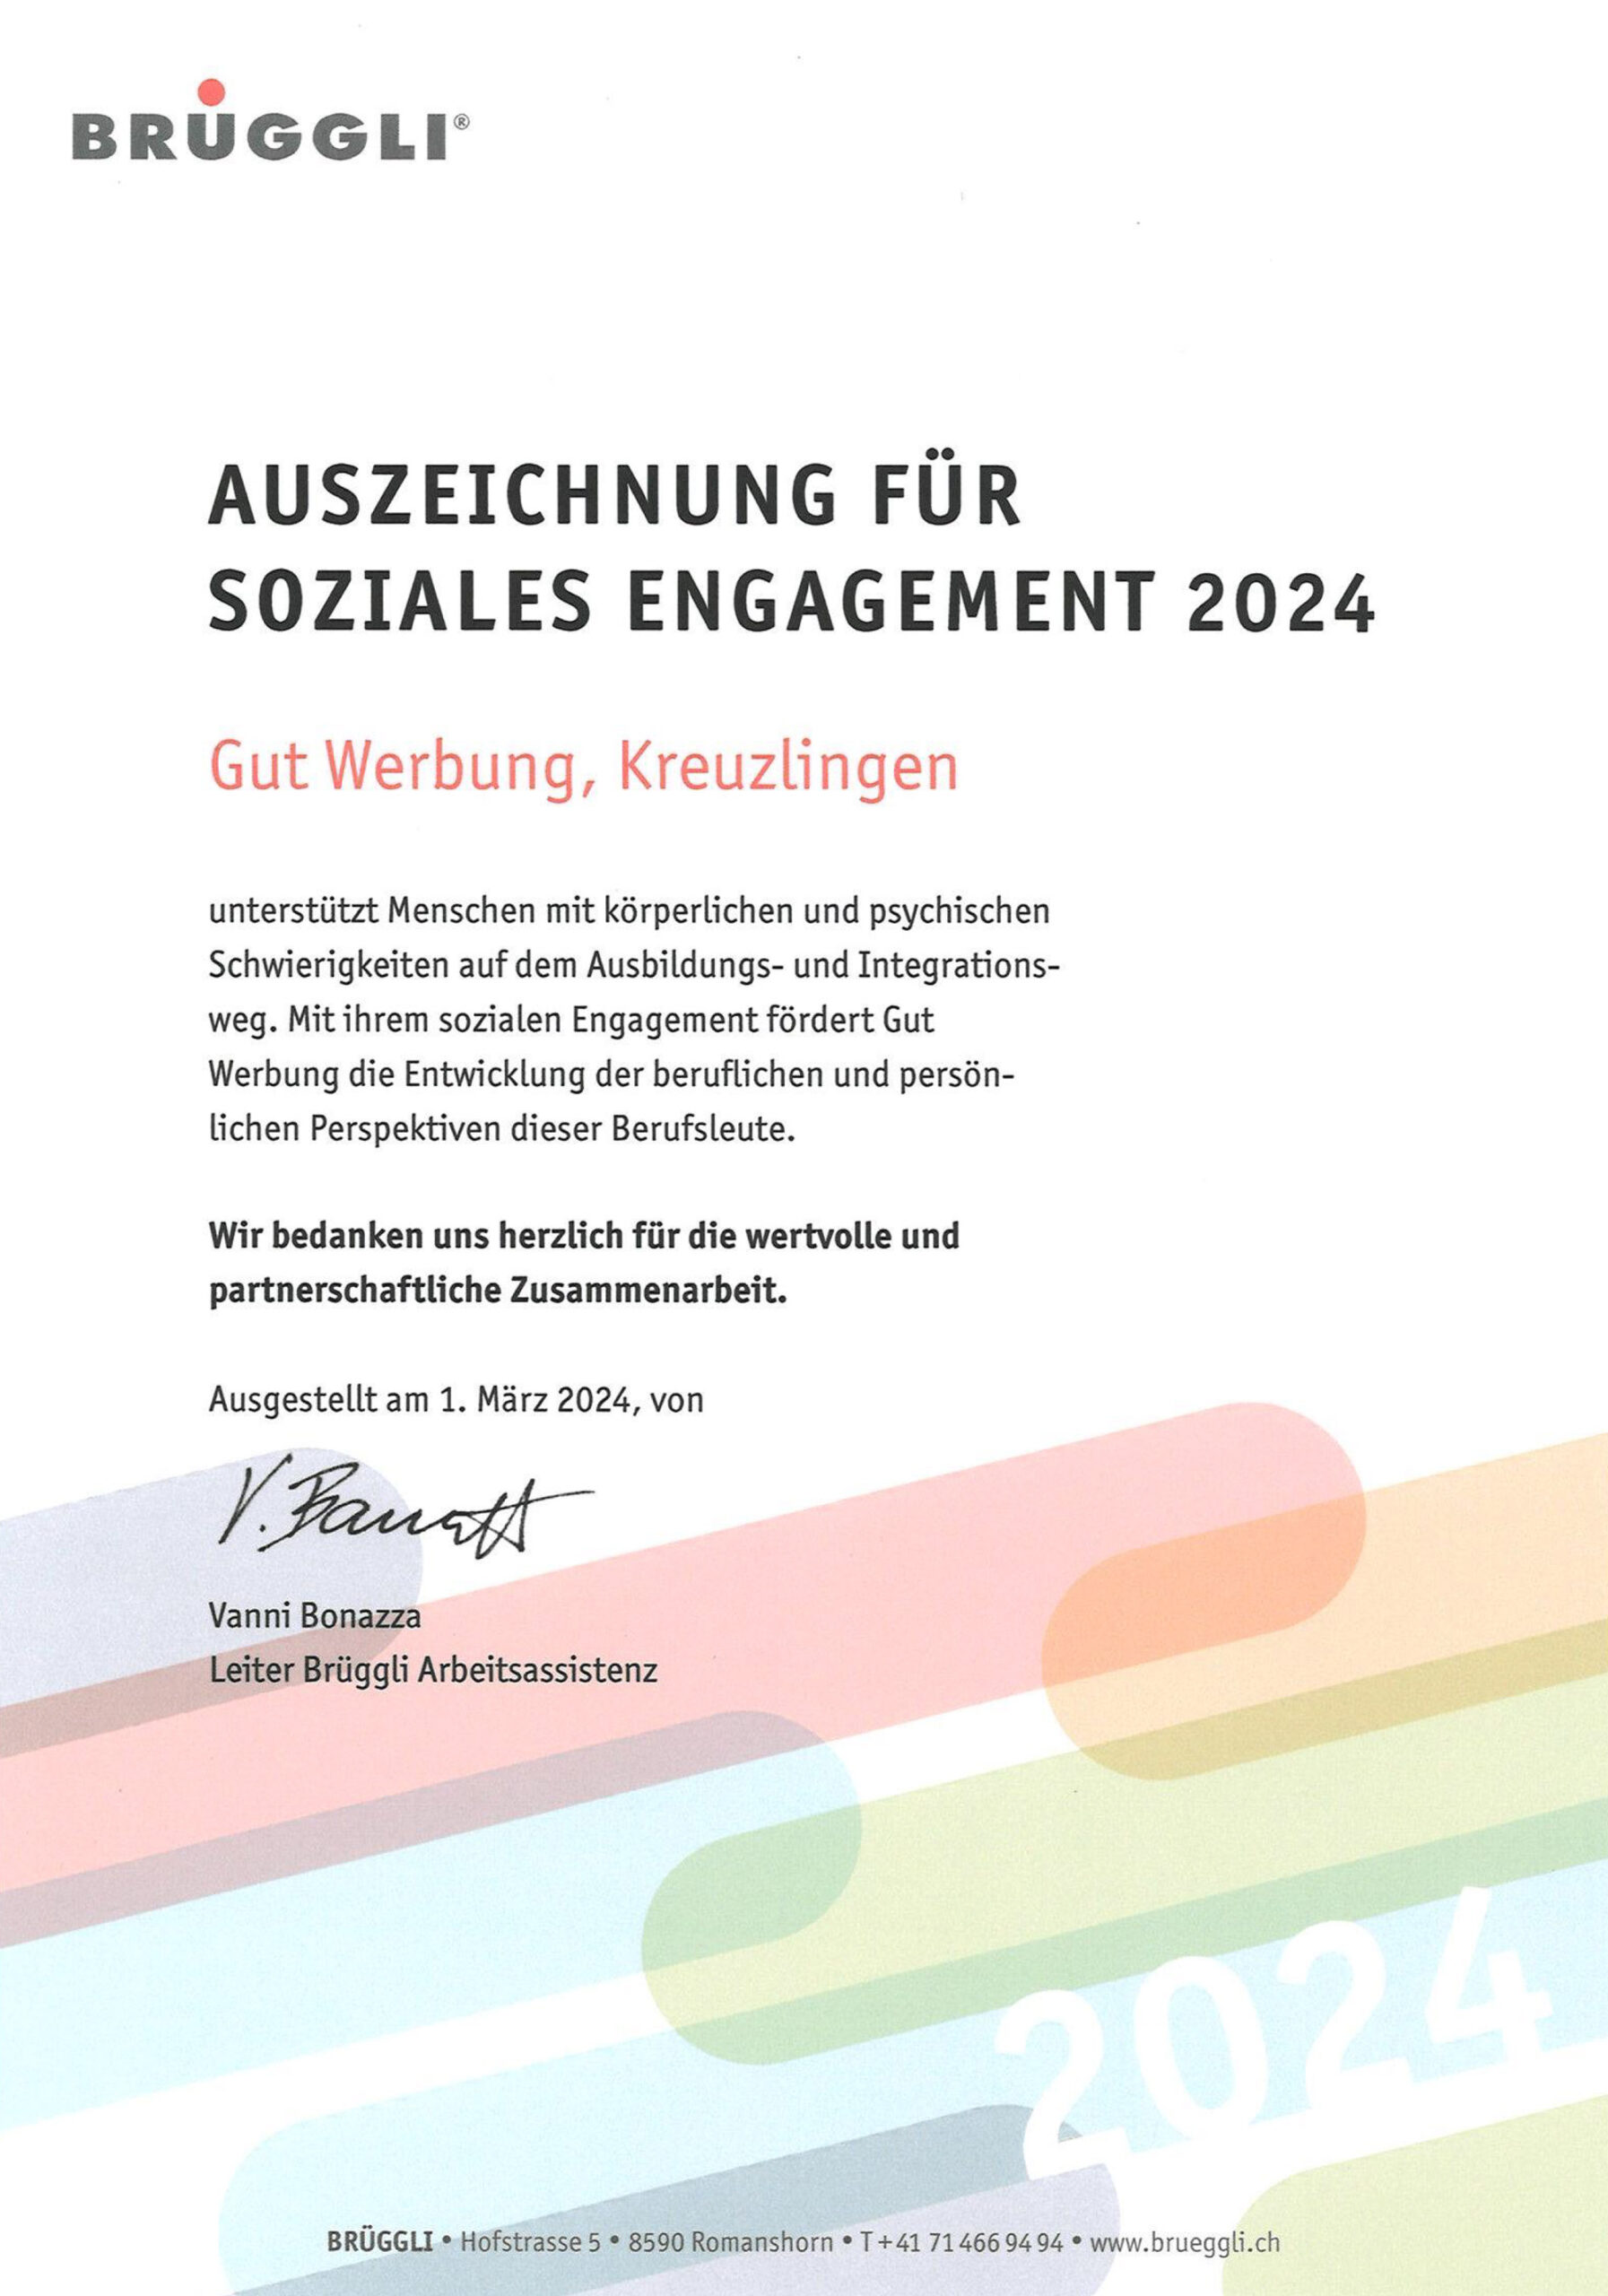 Auszeichnung für Soziales Engagement 2024: Gut Werbung hat im Jahr 2024 mit dem Verein Brüggli zusammengearbeitet. Dieser unterstützt Menschen mit psychischen und körperlichen Schwierigkeiten.